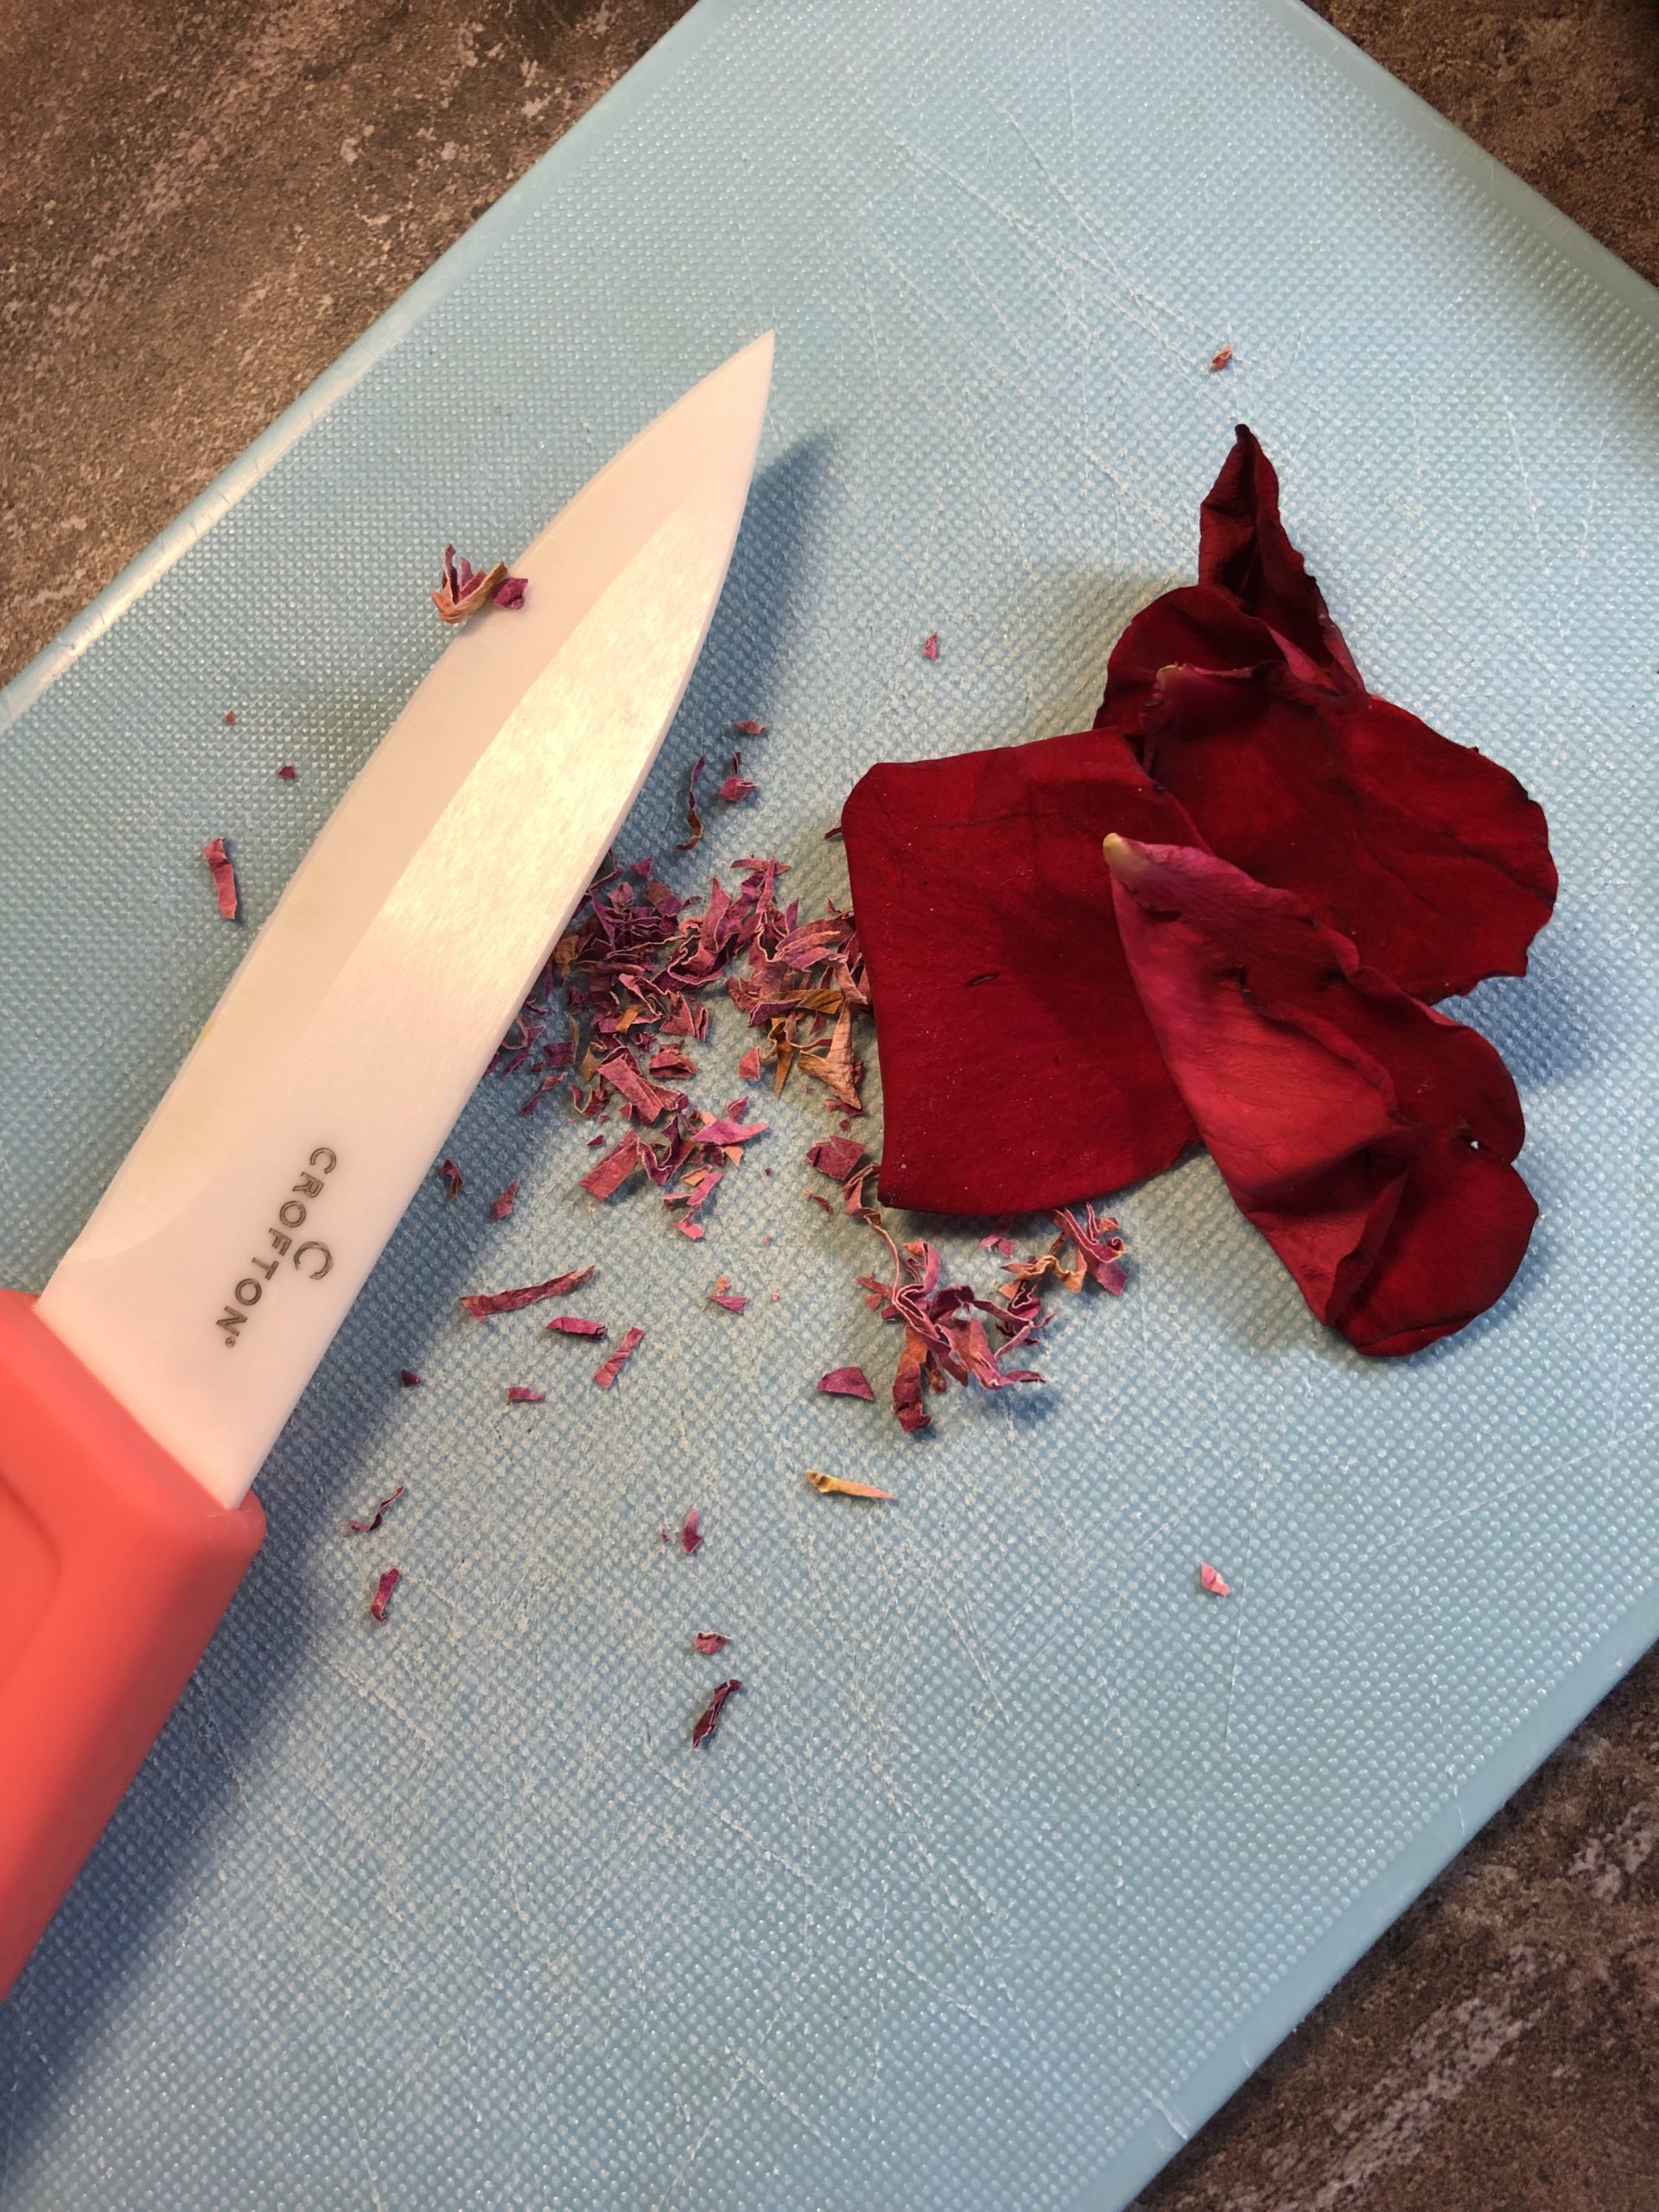 Bild zum Schritt 9 für das Bastel- und DIY-Abenteuer für Kinder: '5-6 frische duftende Rosenblätter mit dem Messer klein schneiden. Ihr...'